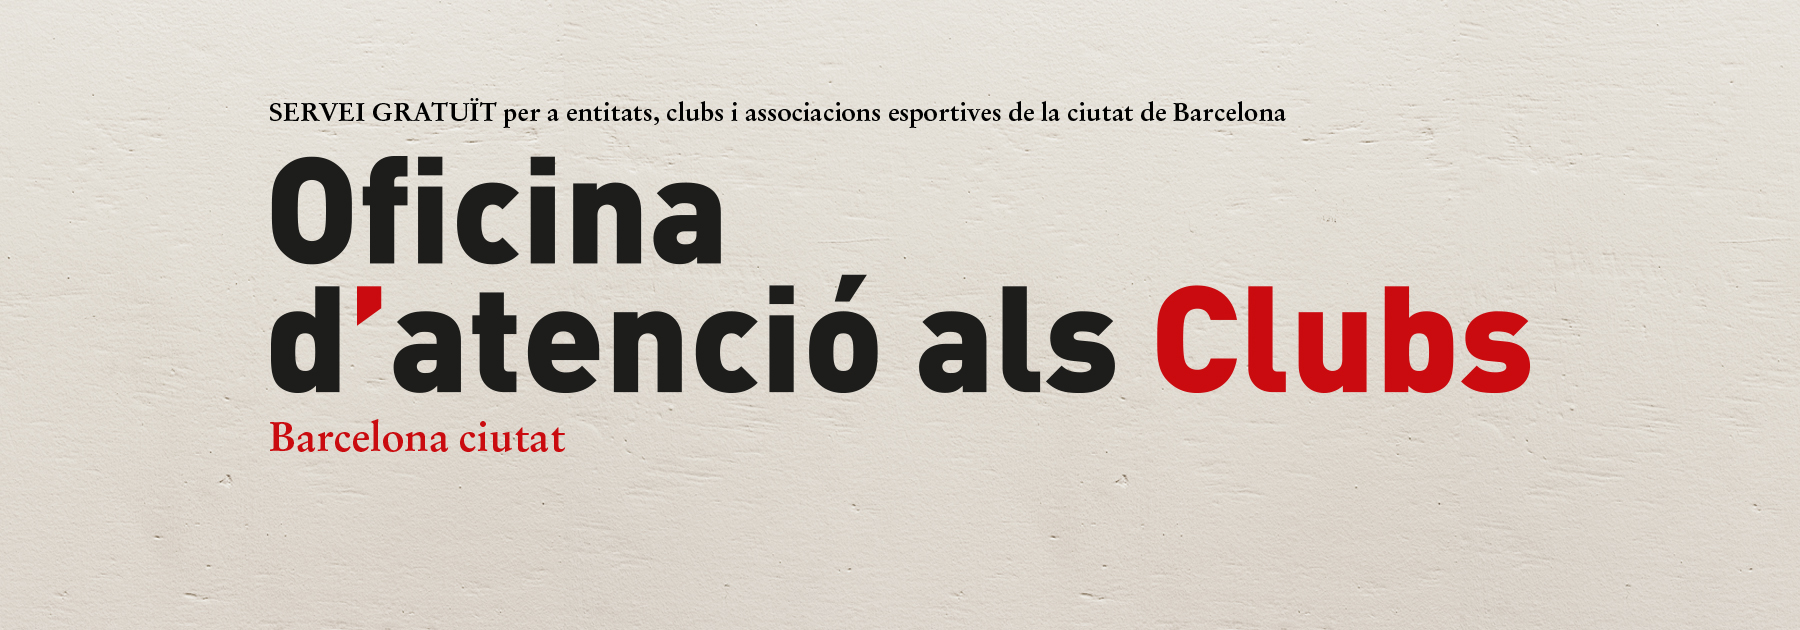 Oficina de Clubs Barcelona Ciutat